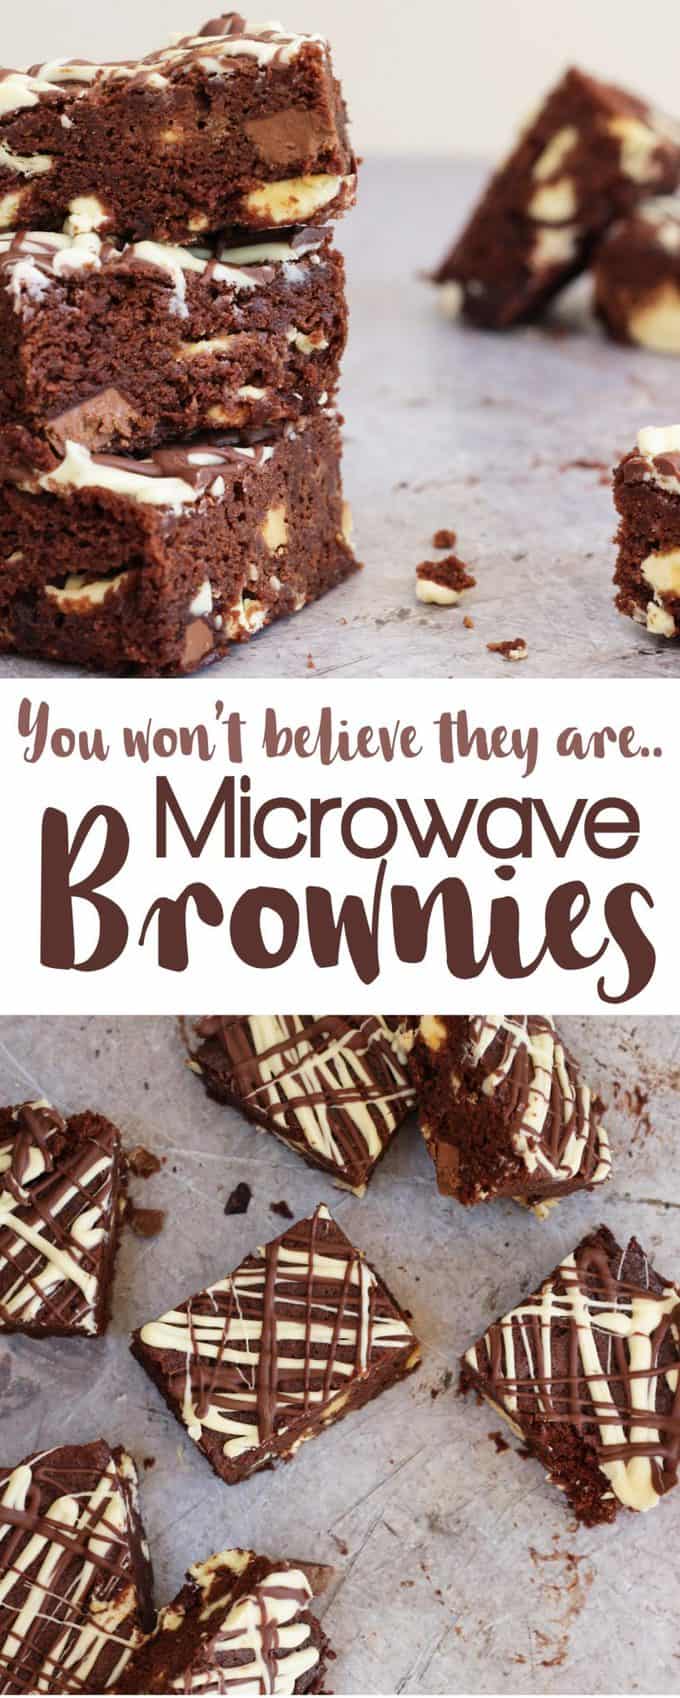 microwave brownies – fudgy, gooey chocolate brownies recipe